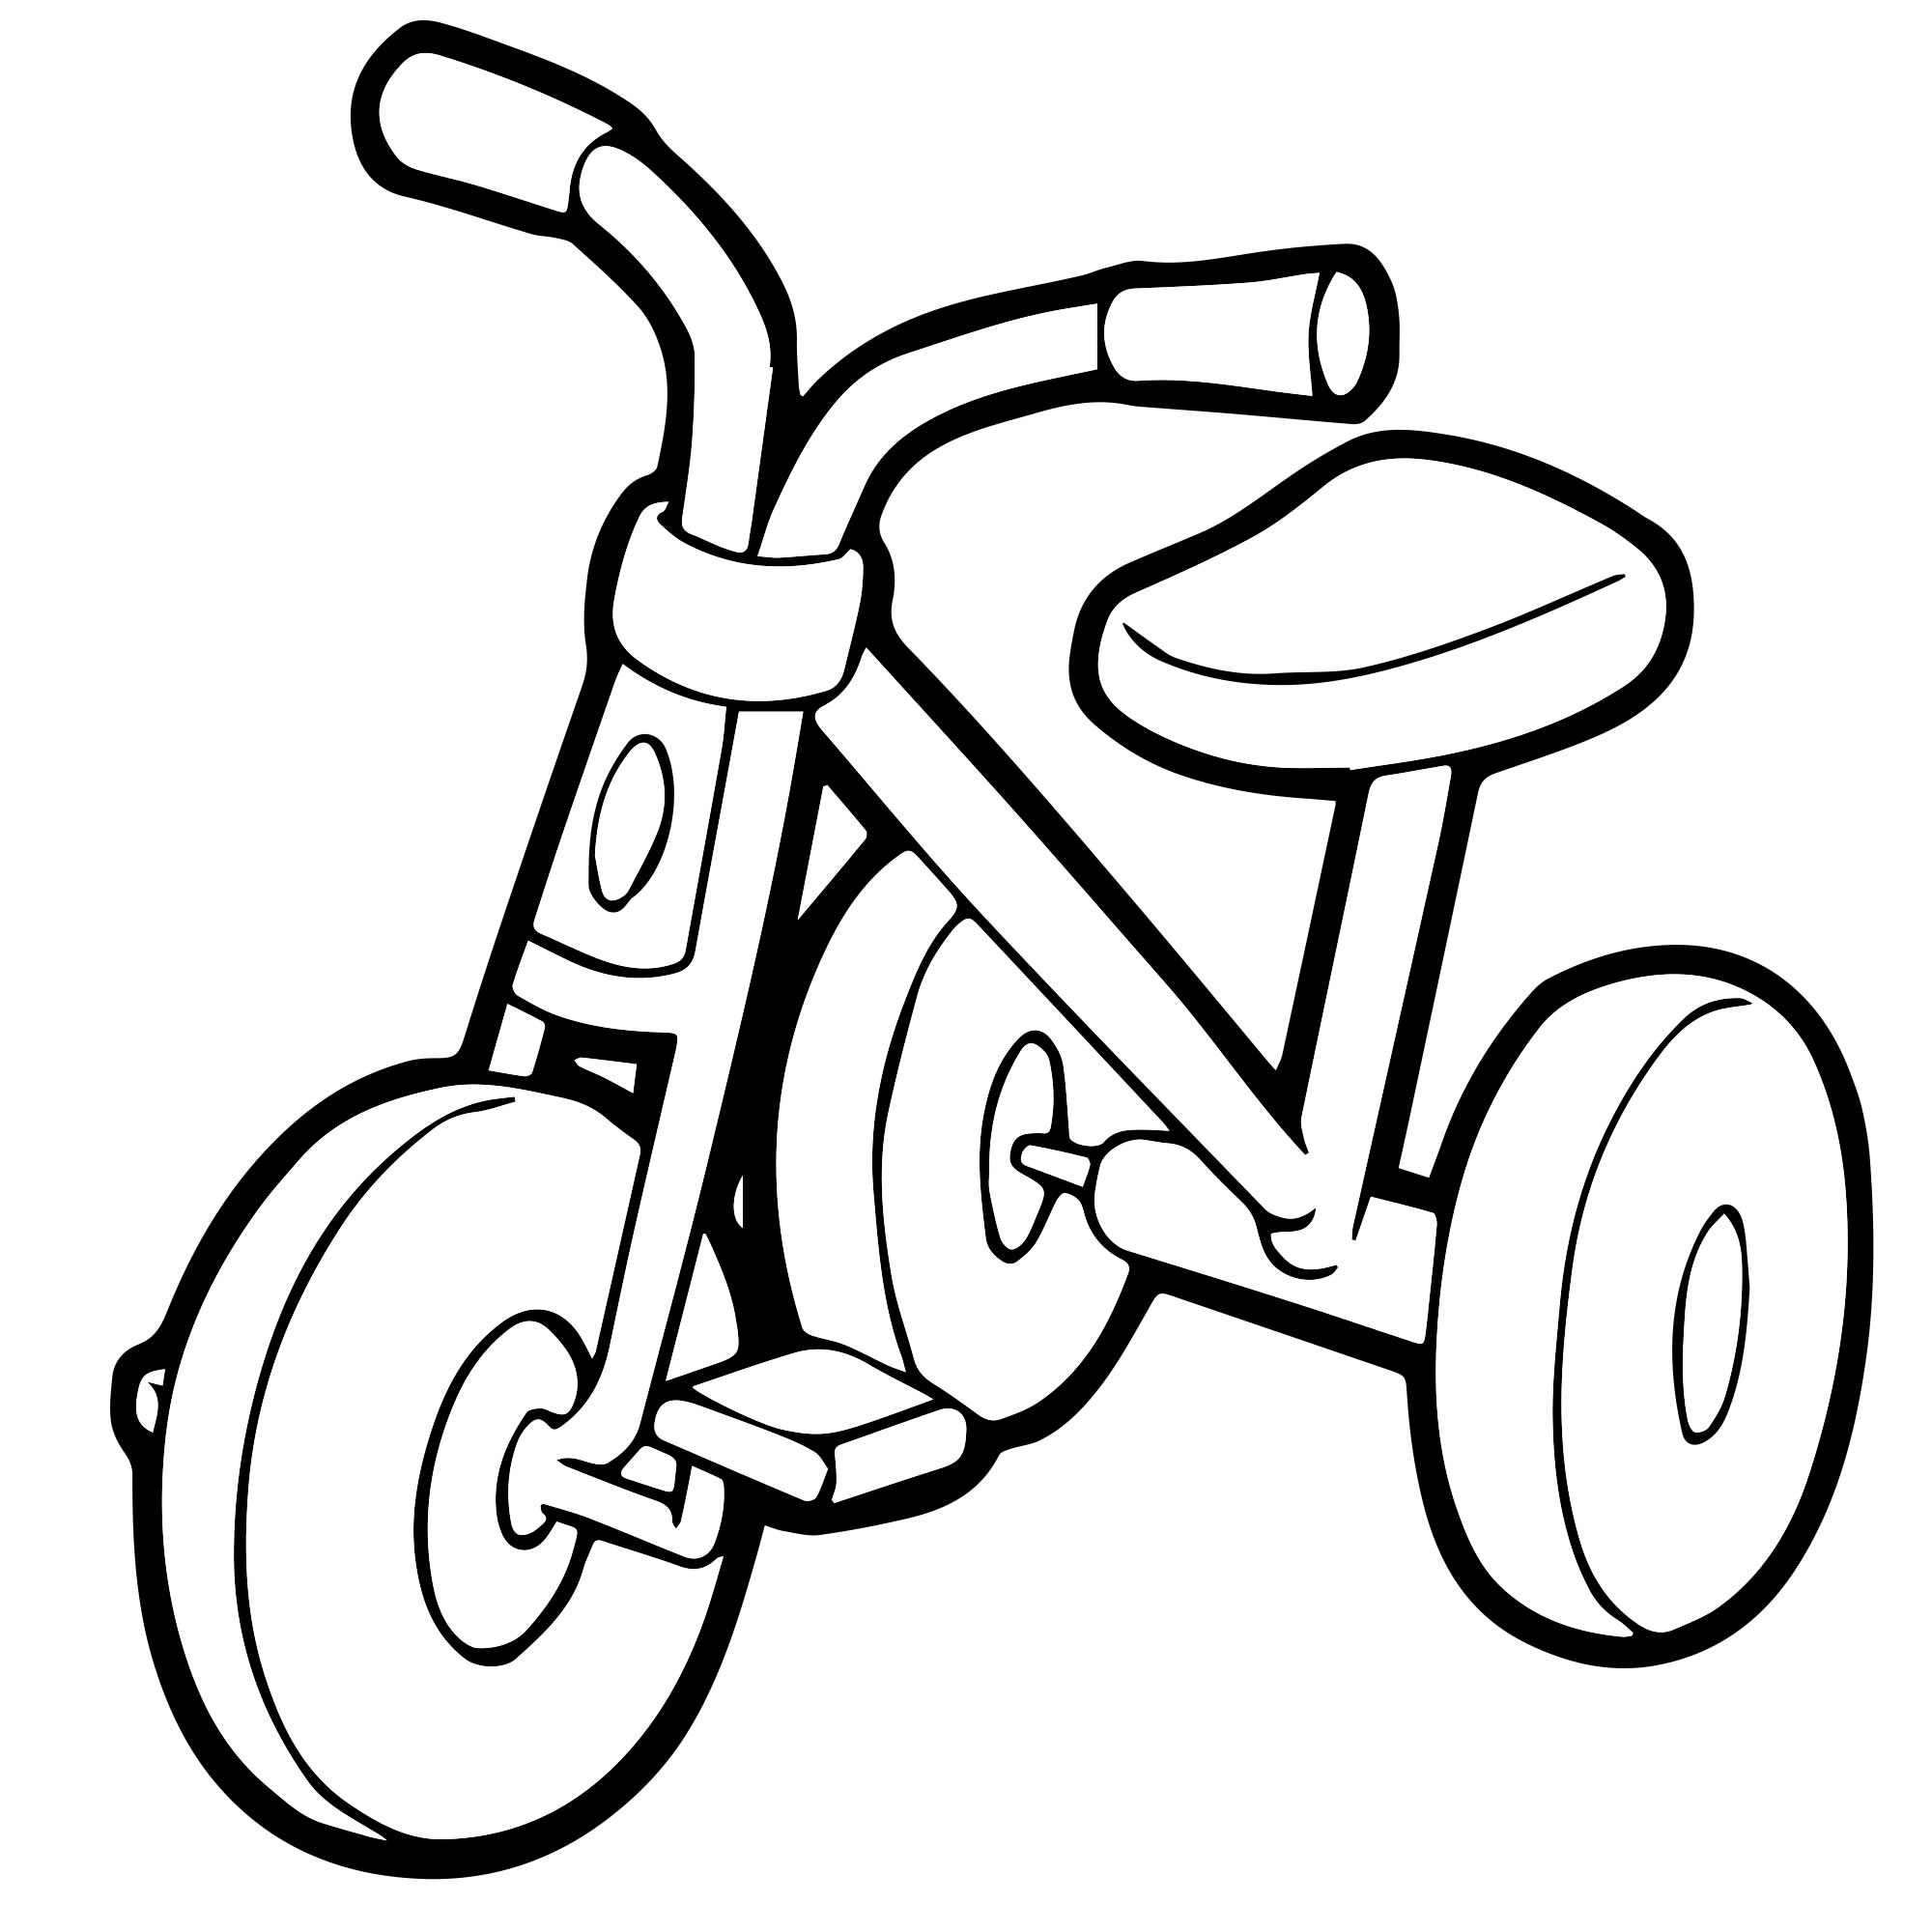 Велосипед раскраска: векторные изображения и иллюстрации, которые можно скачать бесплатно | Freepik